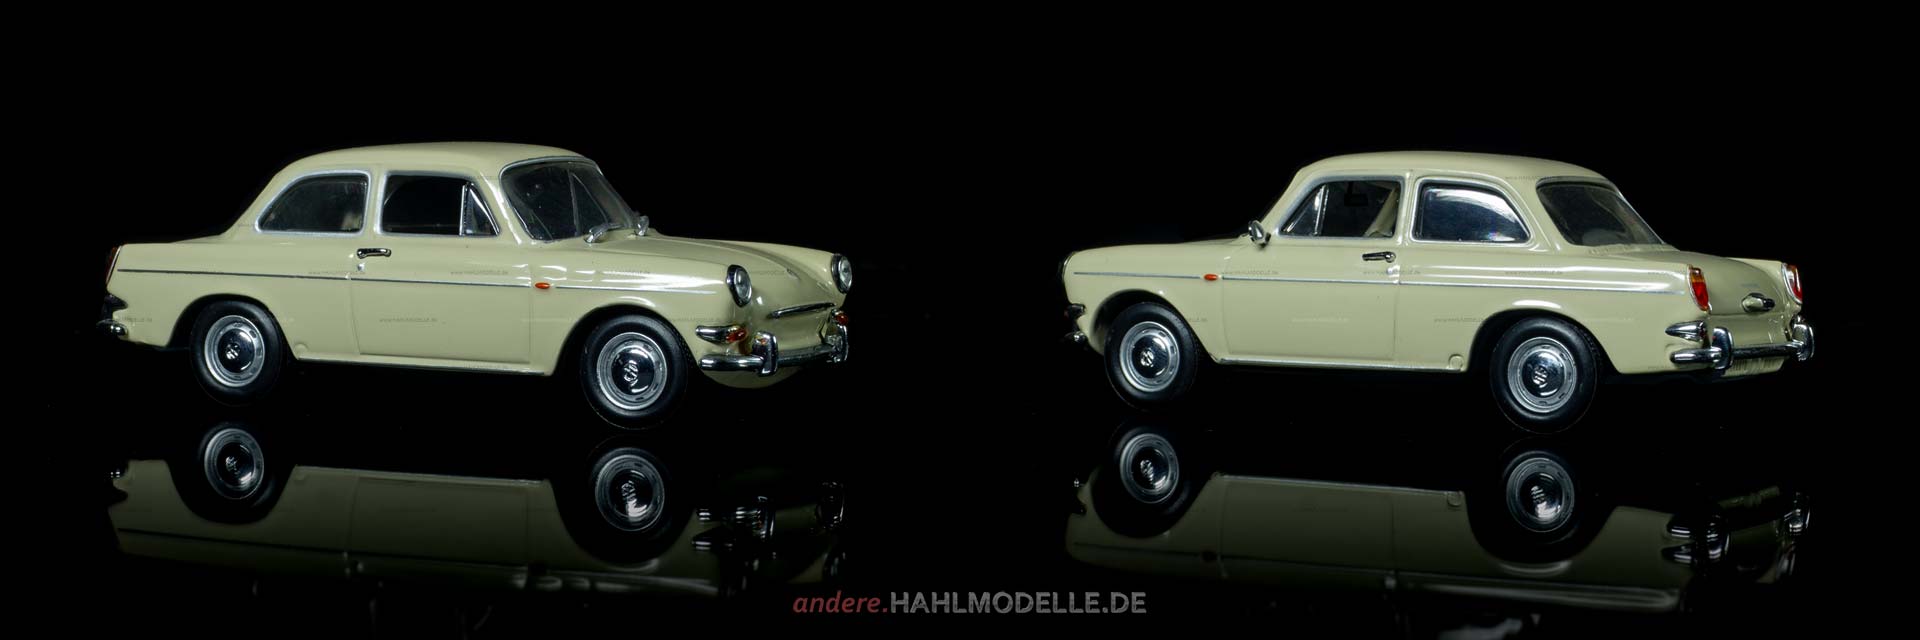 Volkswagen 1600 (Typ 3) | Limousine | Minichamps | 1:43 | www.andere.hahlmodelle.de